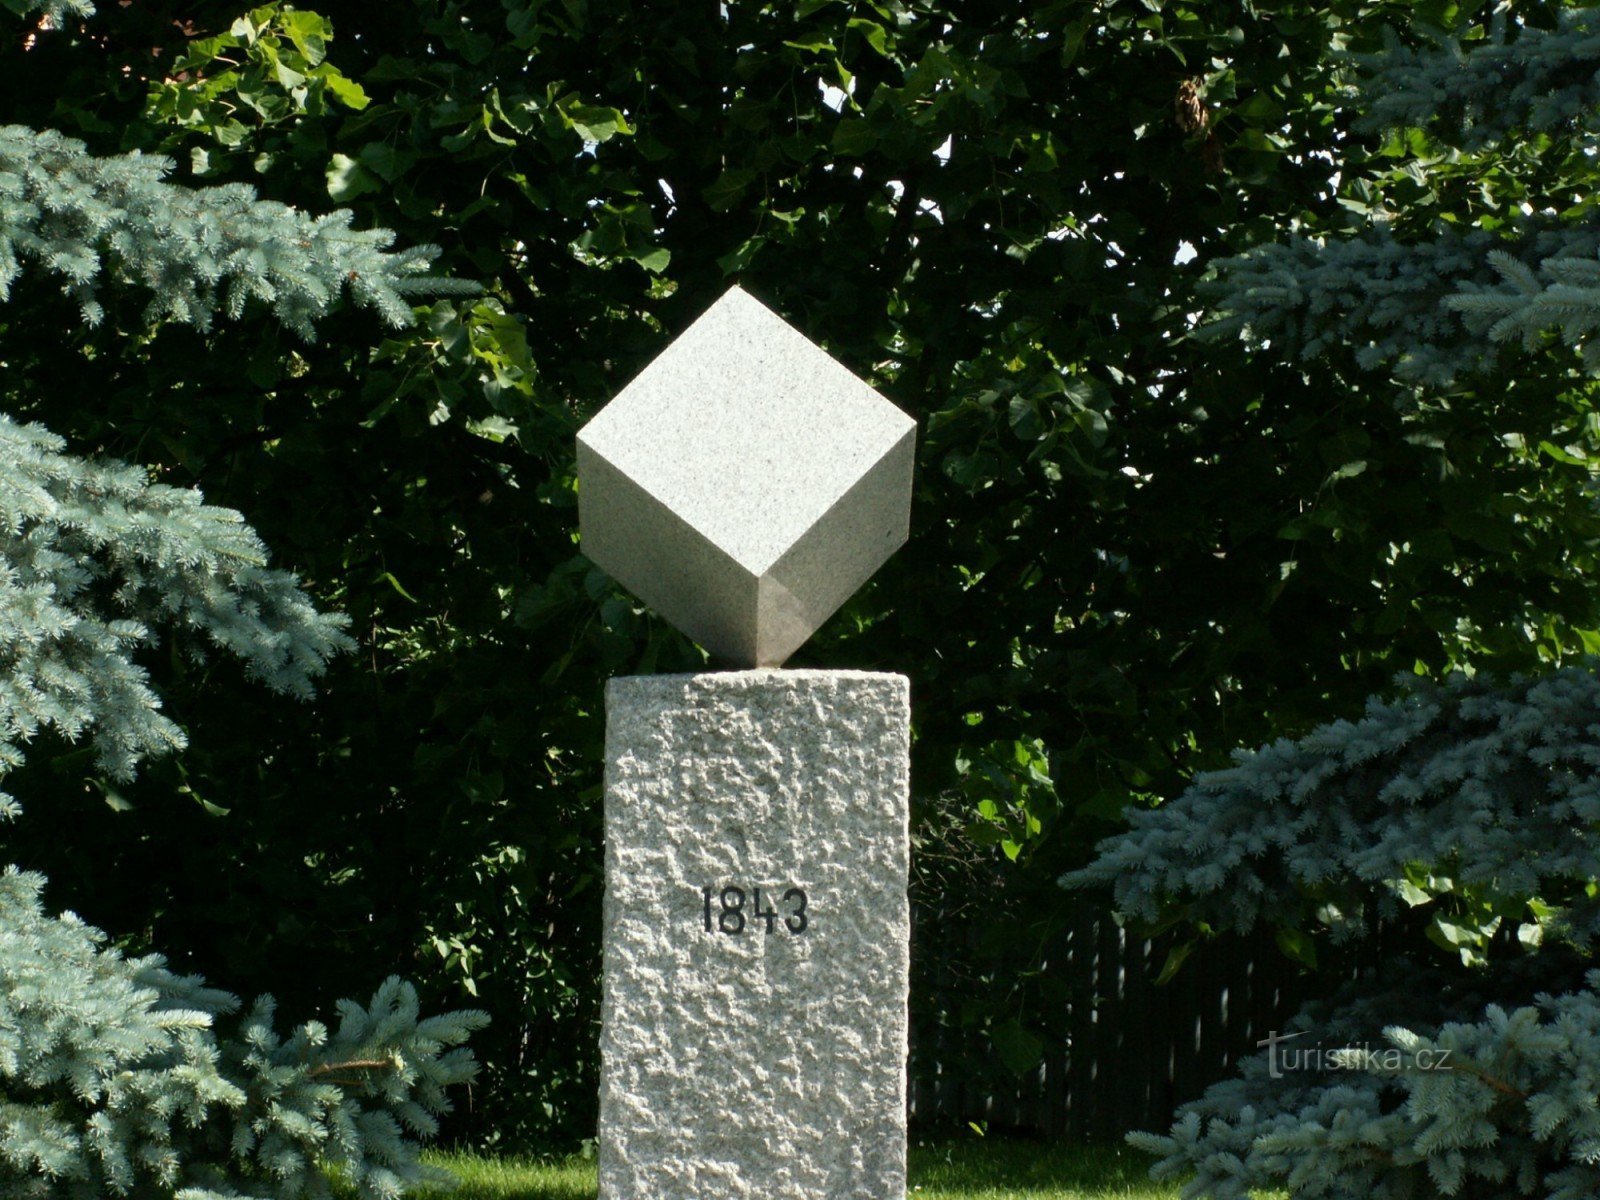 Este monumento de granito foi erguido em 1983